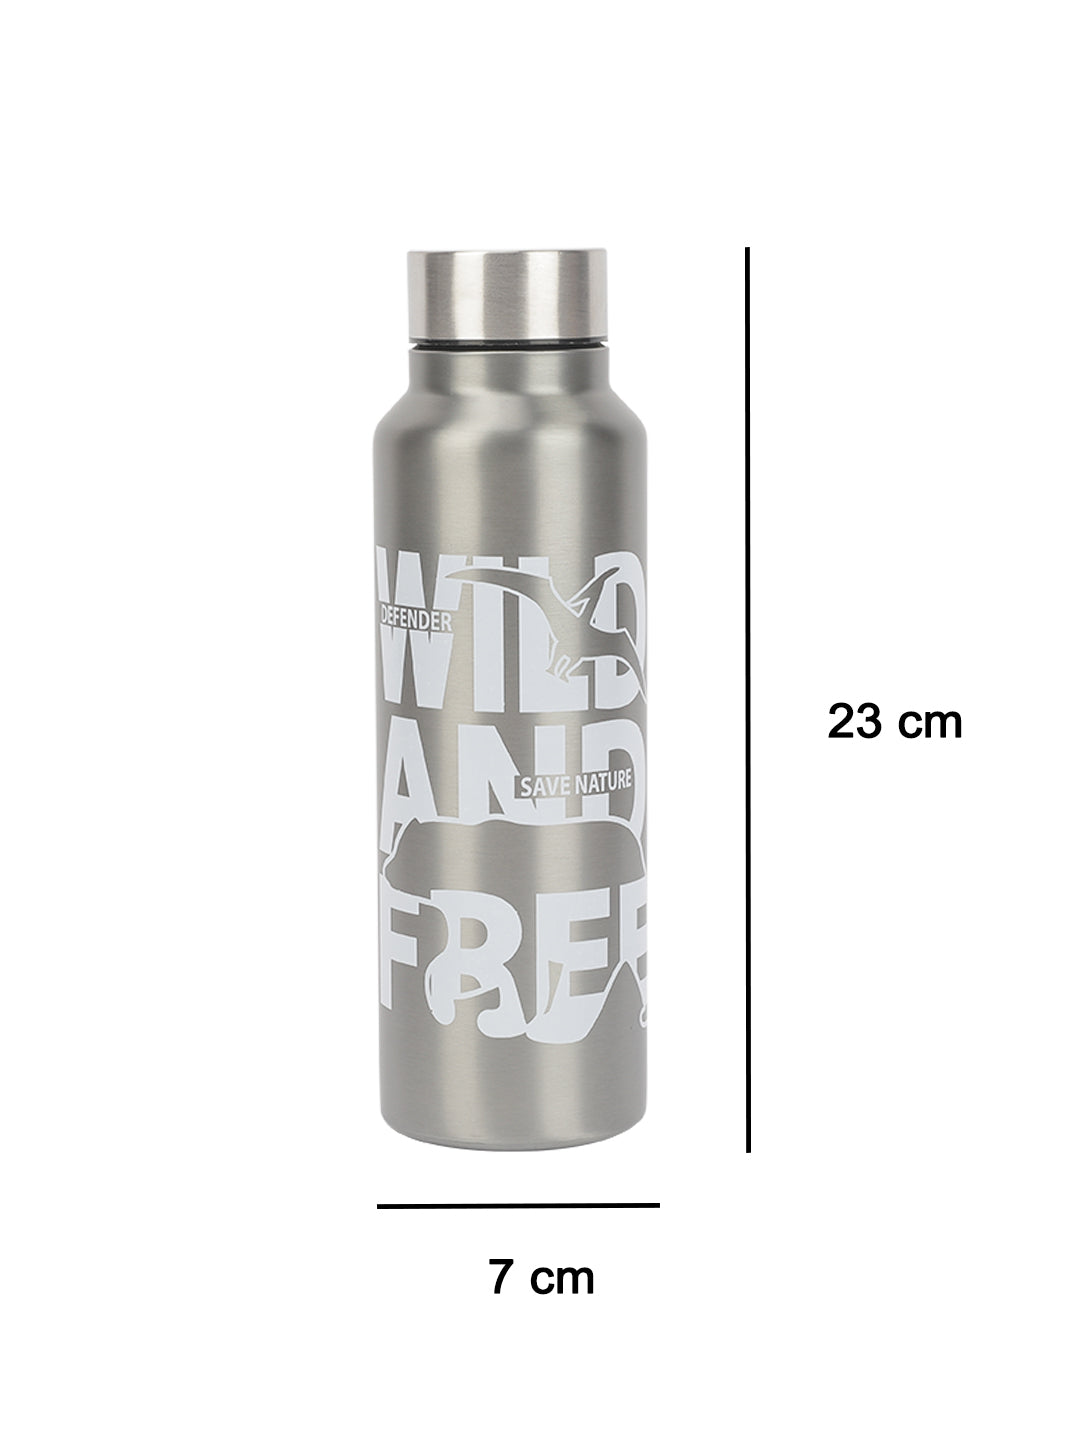 VON CASA Stainless Steel 750Ml Water Bottles - Grey